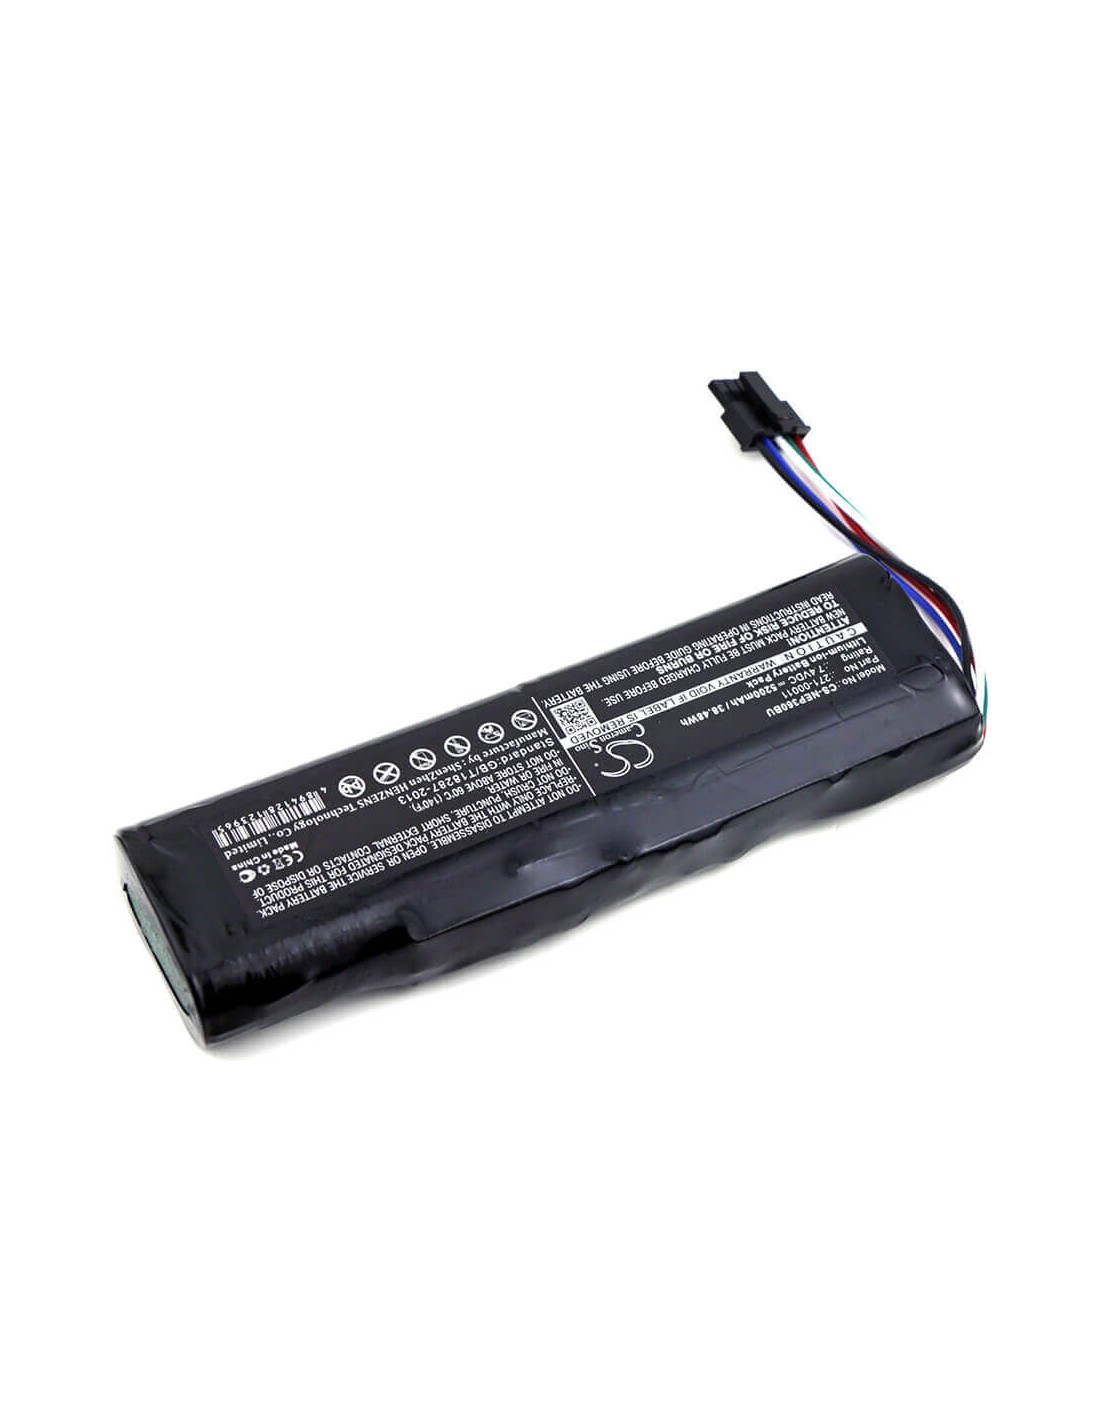 Battery for Ibm, 0x9b0d, 0xc9f3, 271-00011, Avt-900486, Avt-900486 Rev C 7.4V, 5200mAh - 38.48Wh